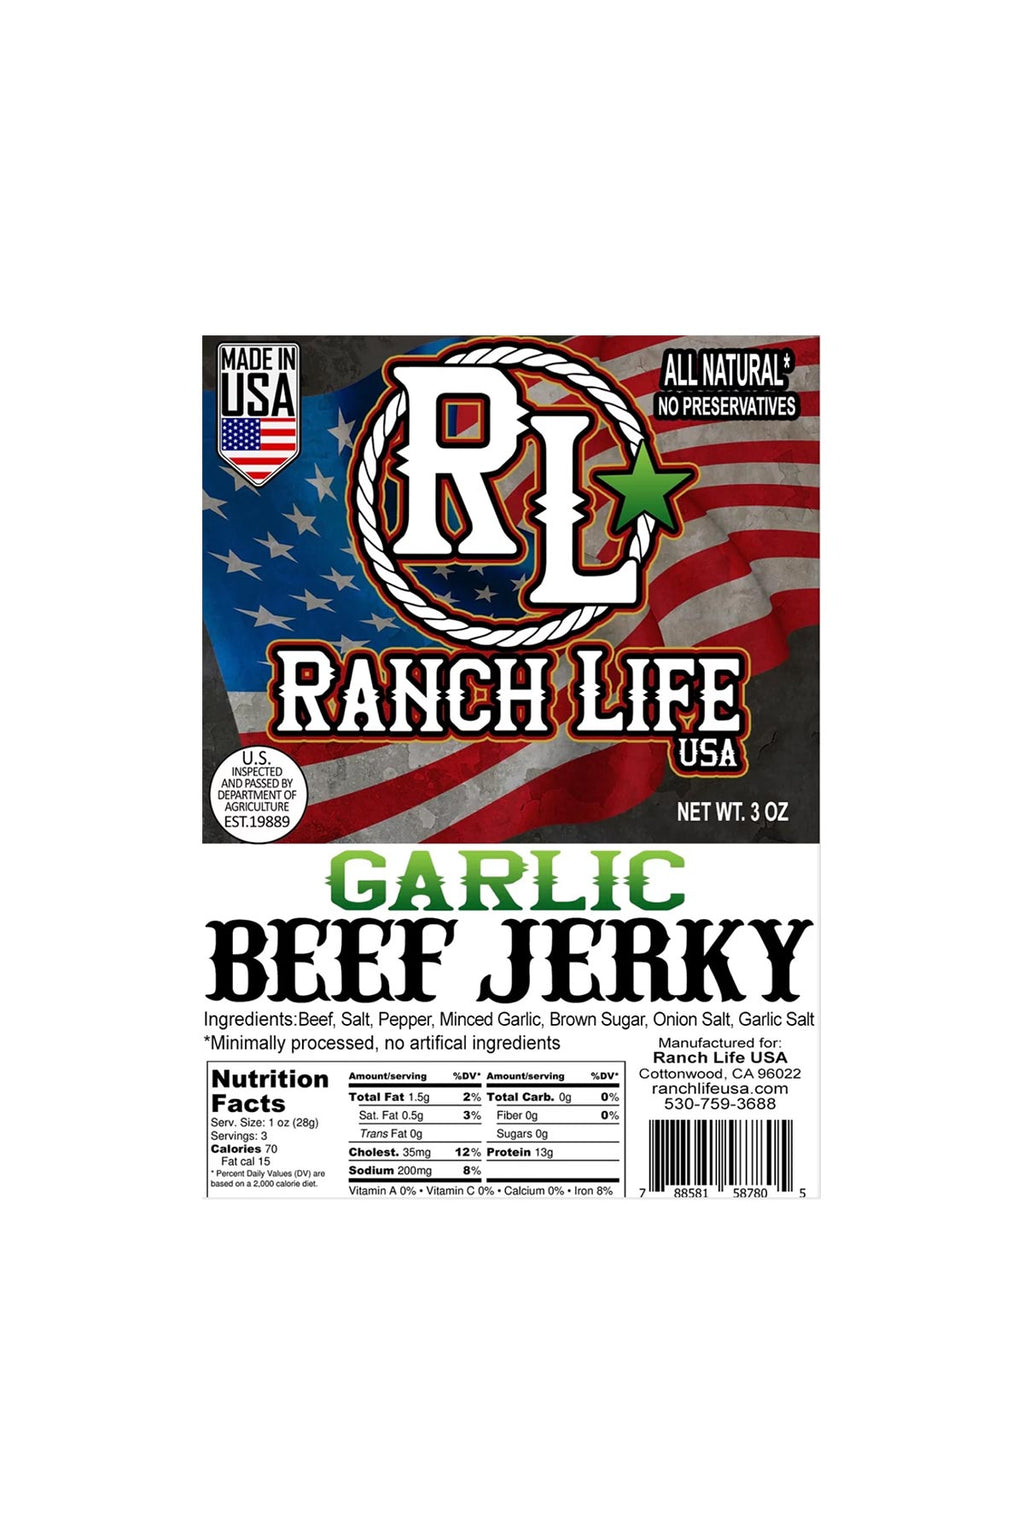 Ranch Life Jerky